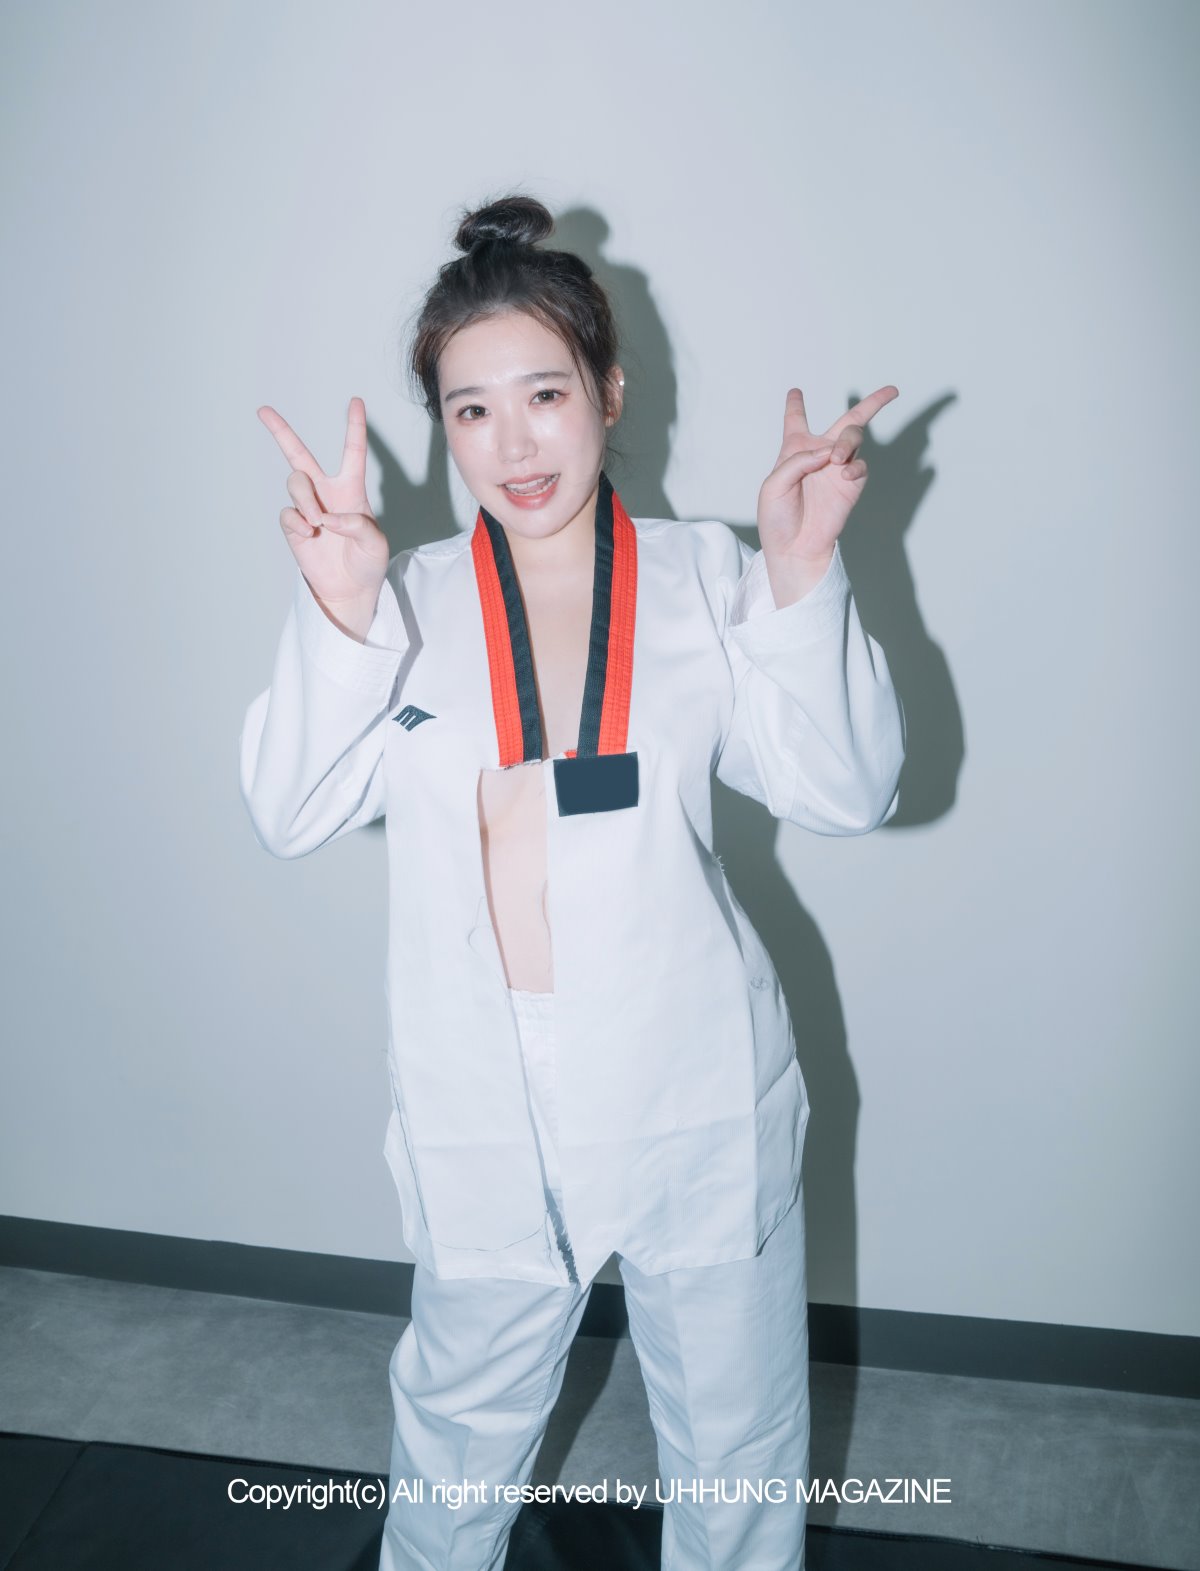 UHHUNG MAGAZINE Jenn Vol 1 Taekwondo Part2 0062 6820841138.jpg